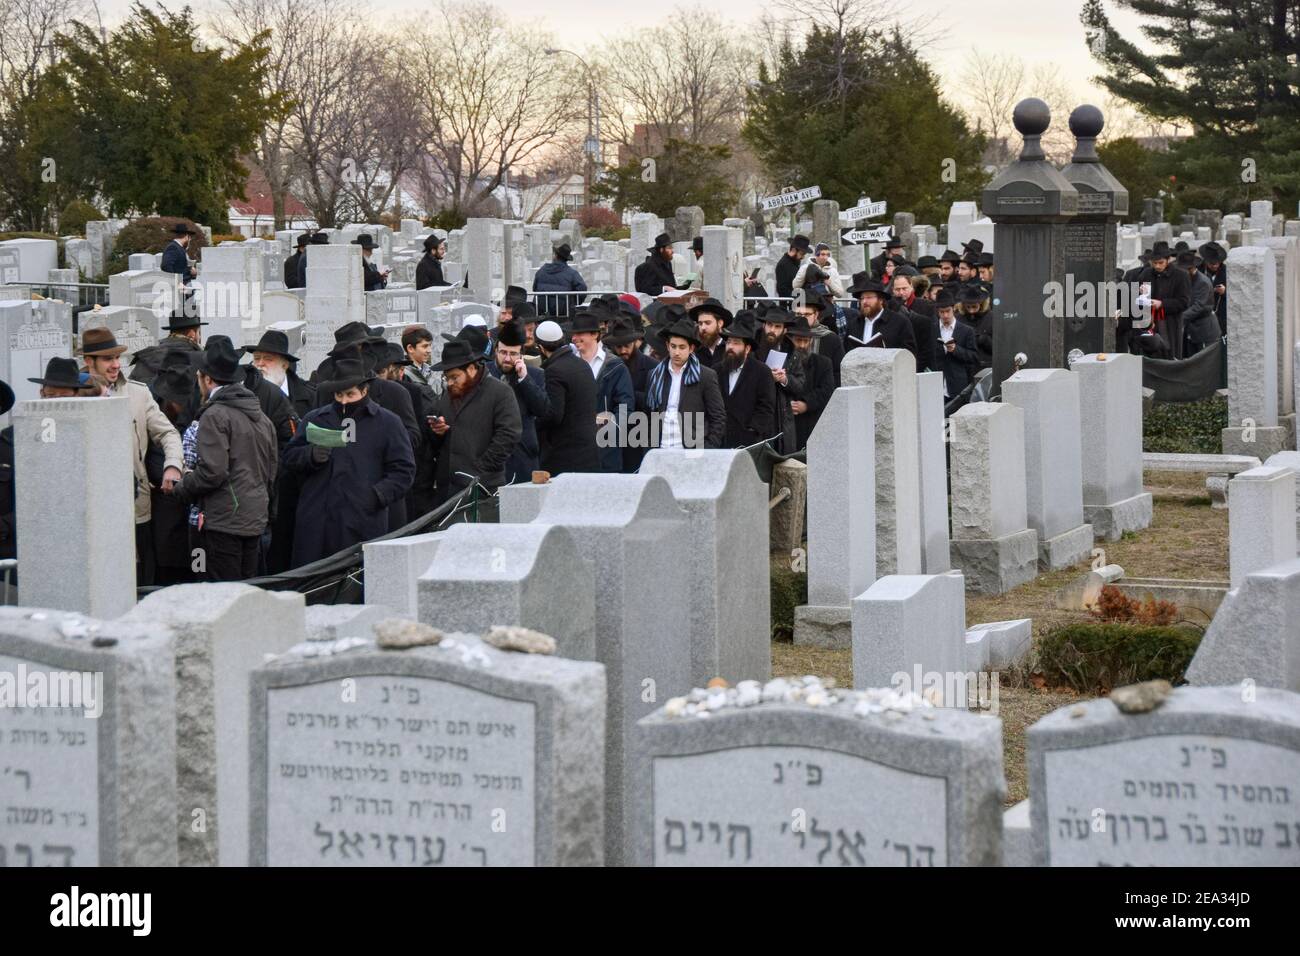 Eine Gruppe sehr religiöser jüdischer Männer steht auf einer langen Schlange, um im Ohel in Cambria Heights, Queens, New York auf Yud Shevat zu beten. Stockfoto